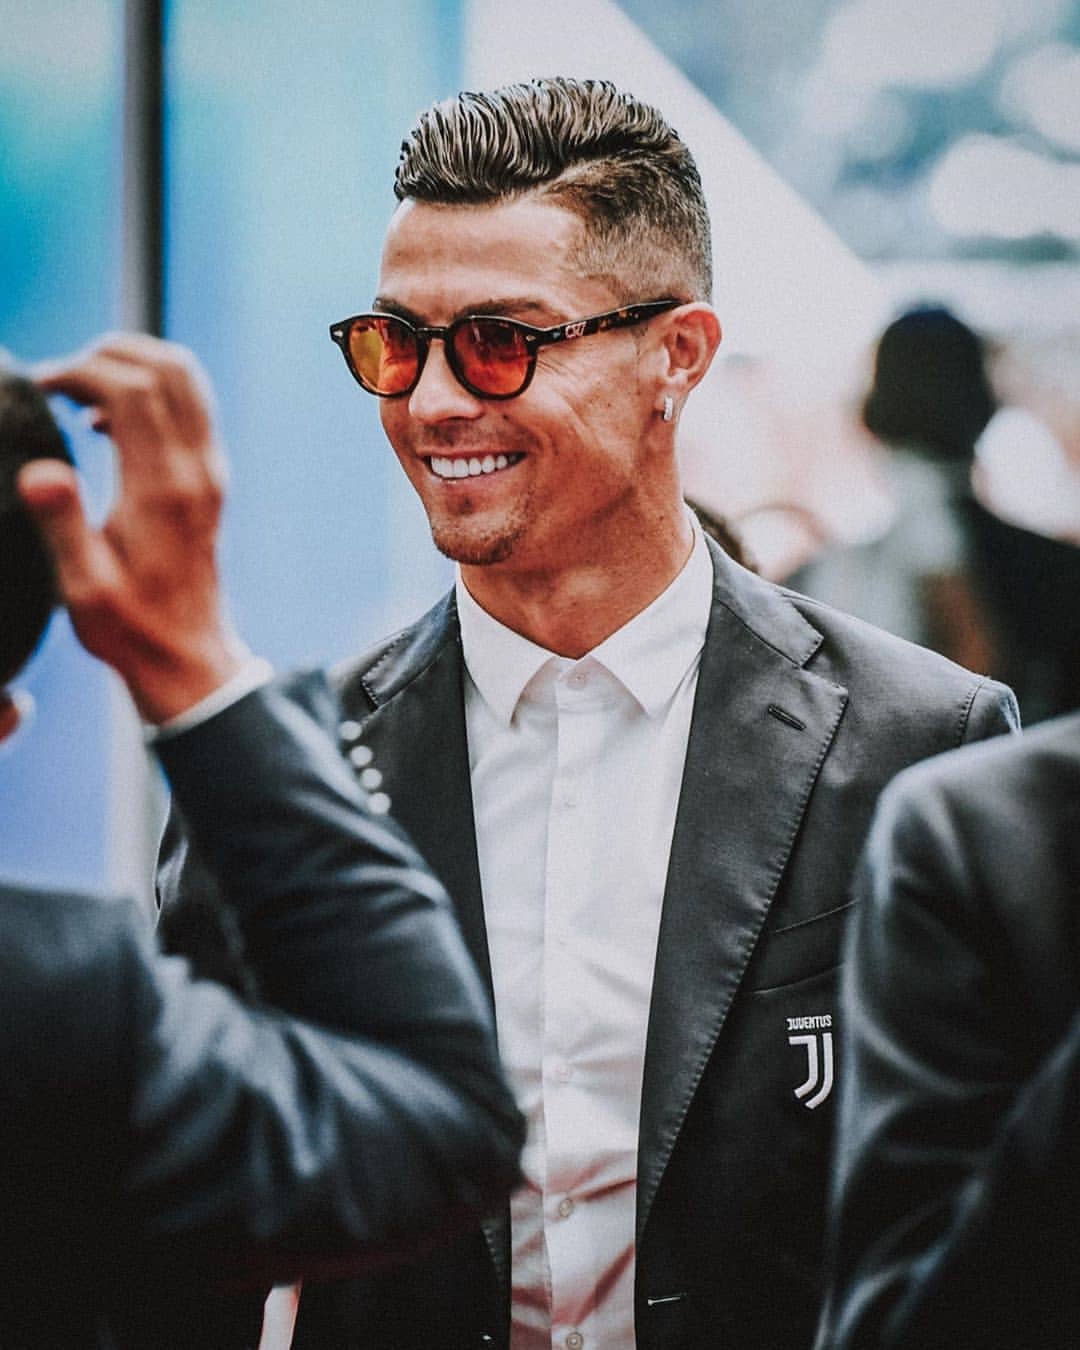 Hình ảnh Ronaldo đẹp trai: Các fan hâm mộ của Ronaldo không thể bỏ qua hình ảnh cầu thủ đẹp trai này. Với đường nét khuôn mặt sắc sảo cùng vóc dáng lý tưởng, Ronaldo là gương mặt đại diện cho sự hoàn hảo và sự nổi bật.